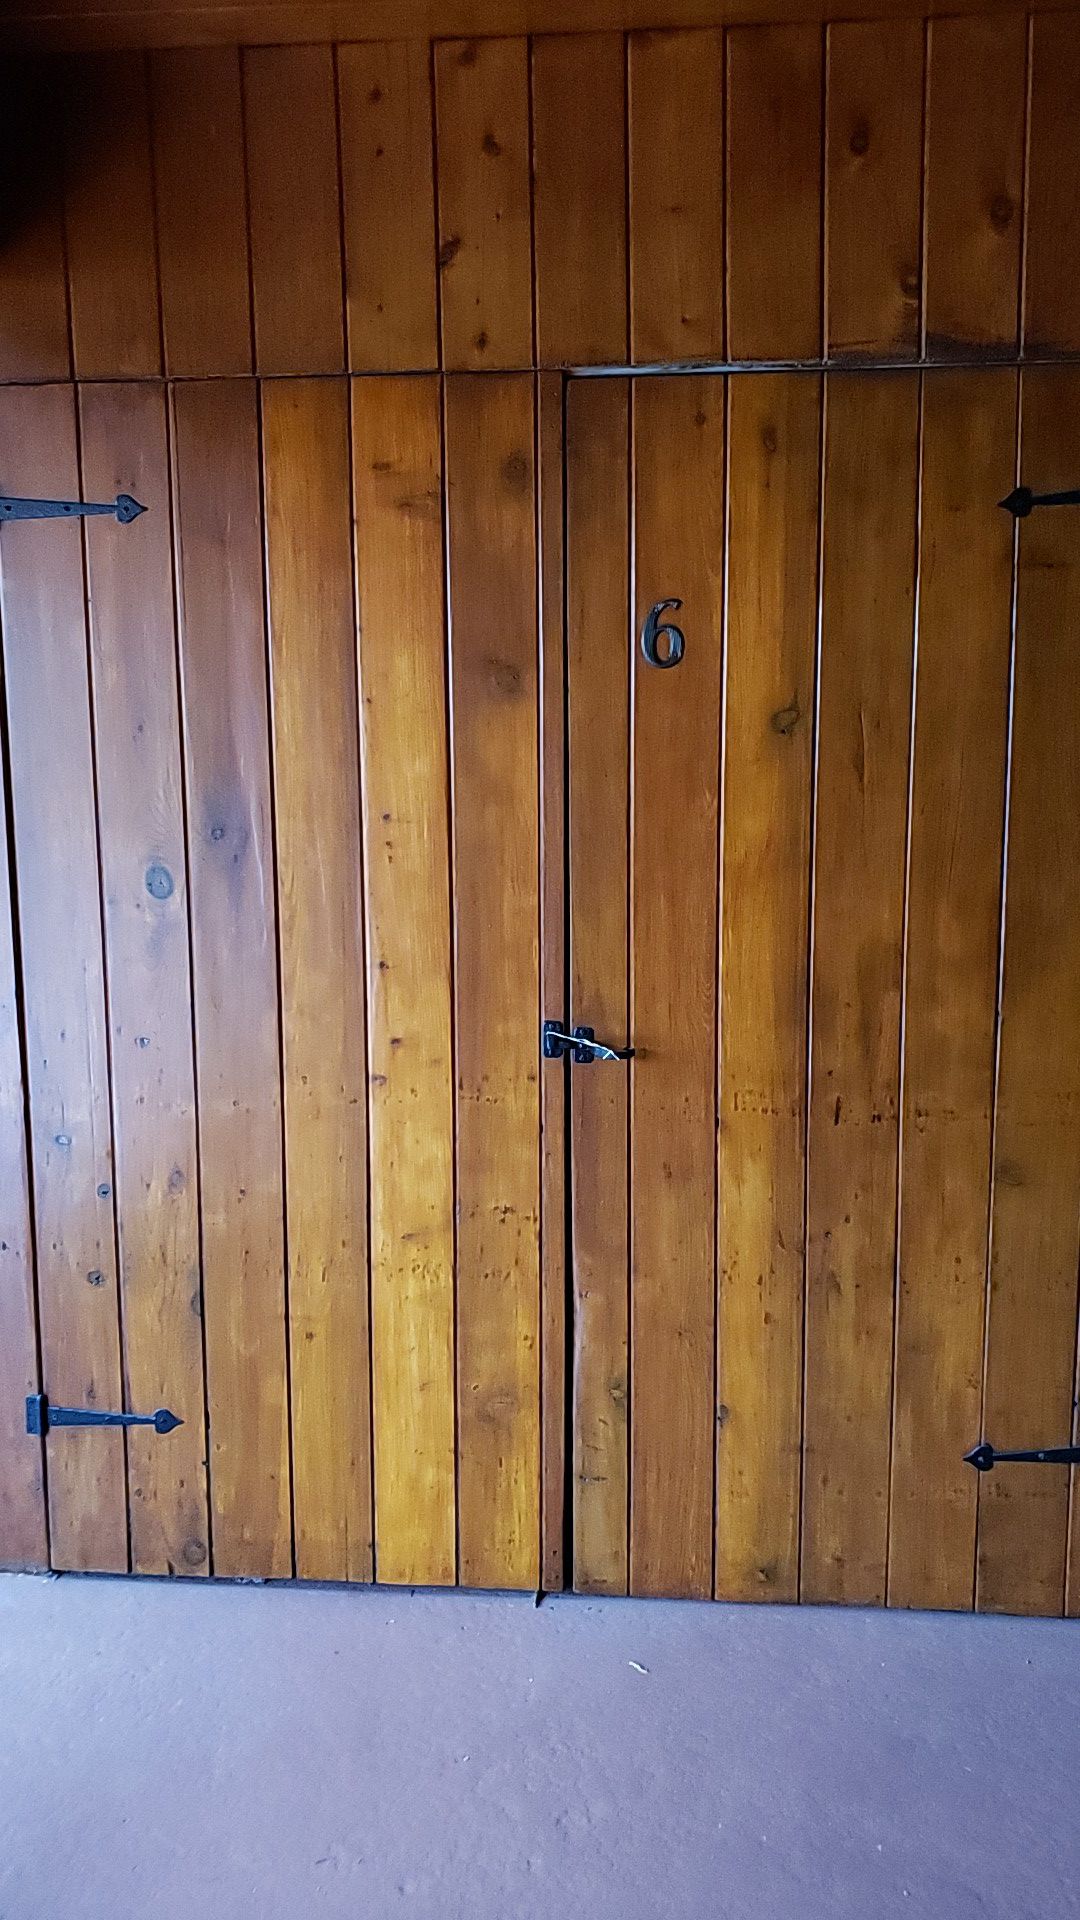 6 sets of storage double doors